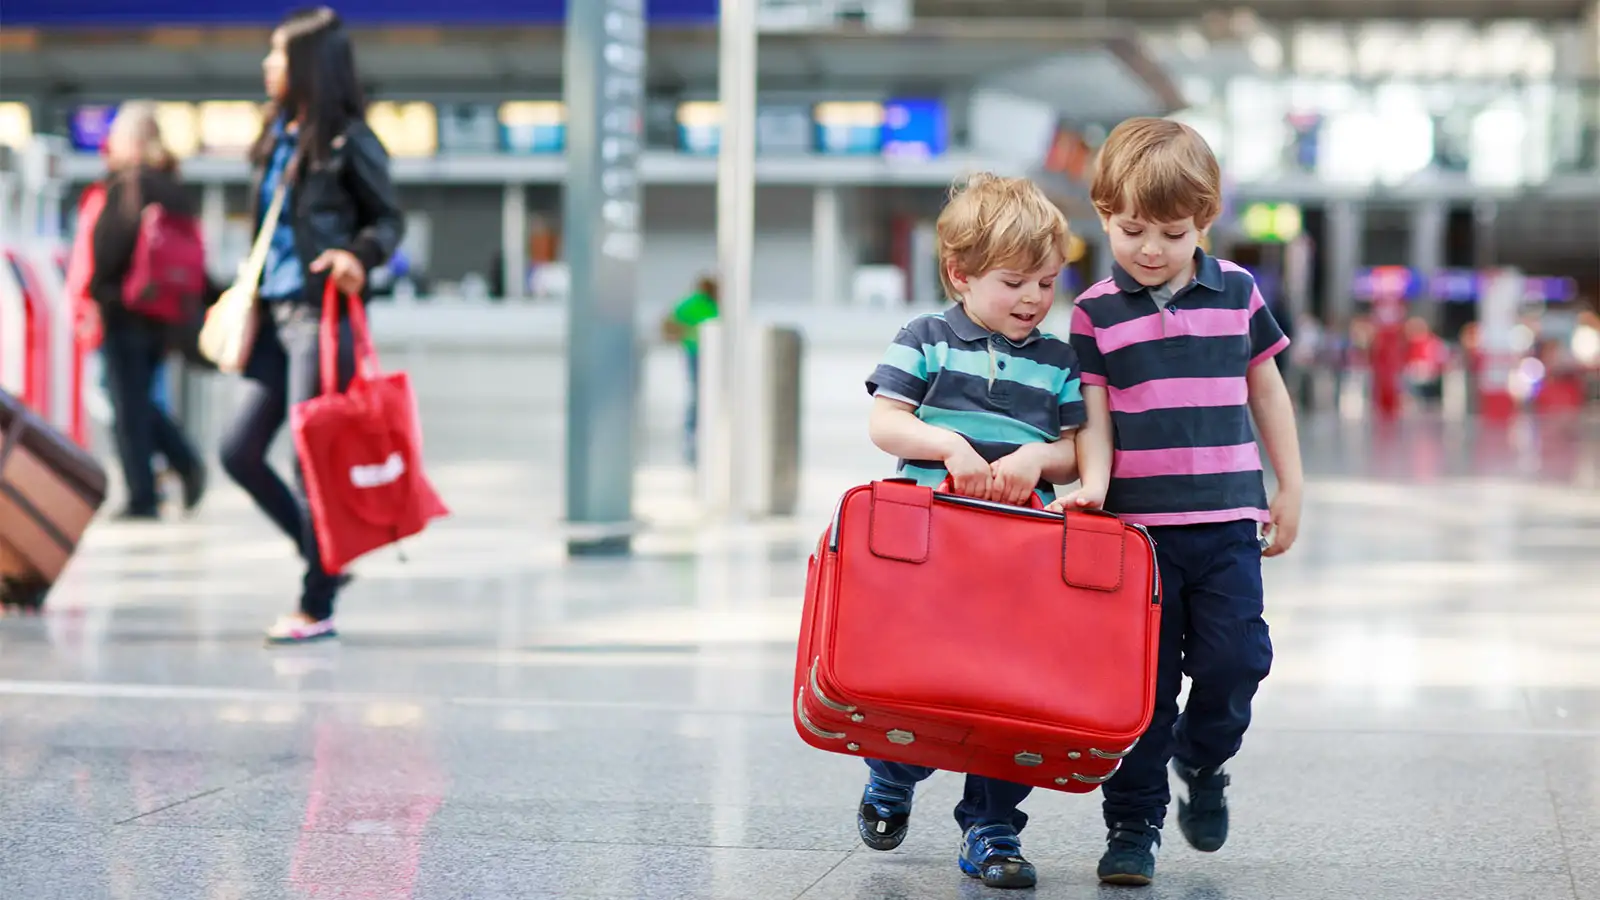 Luggage Locks: Should I Lock My Suitcase When I Fly?